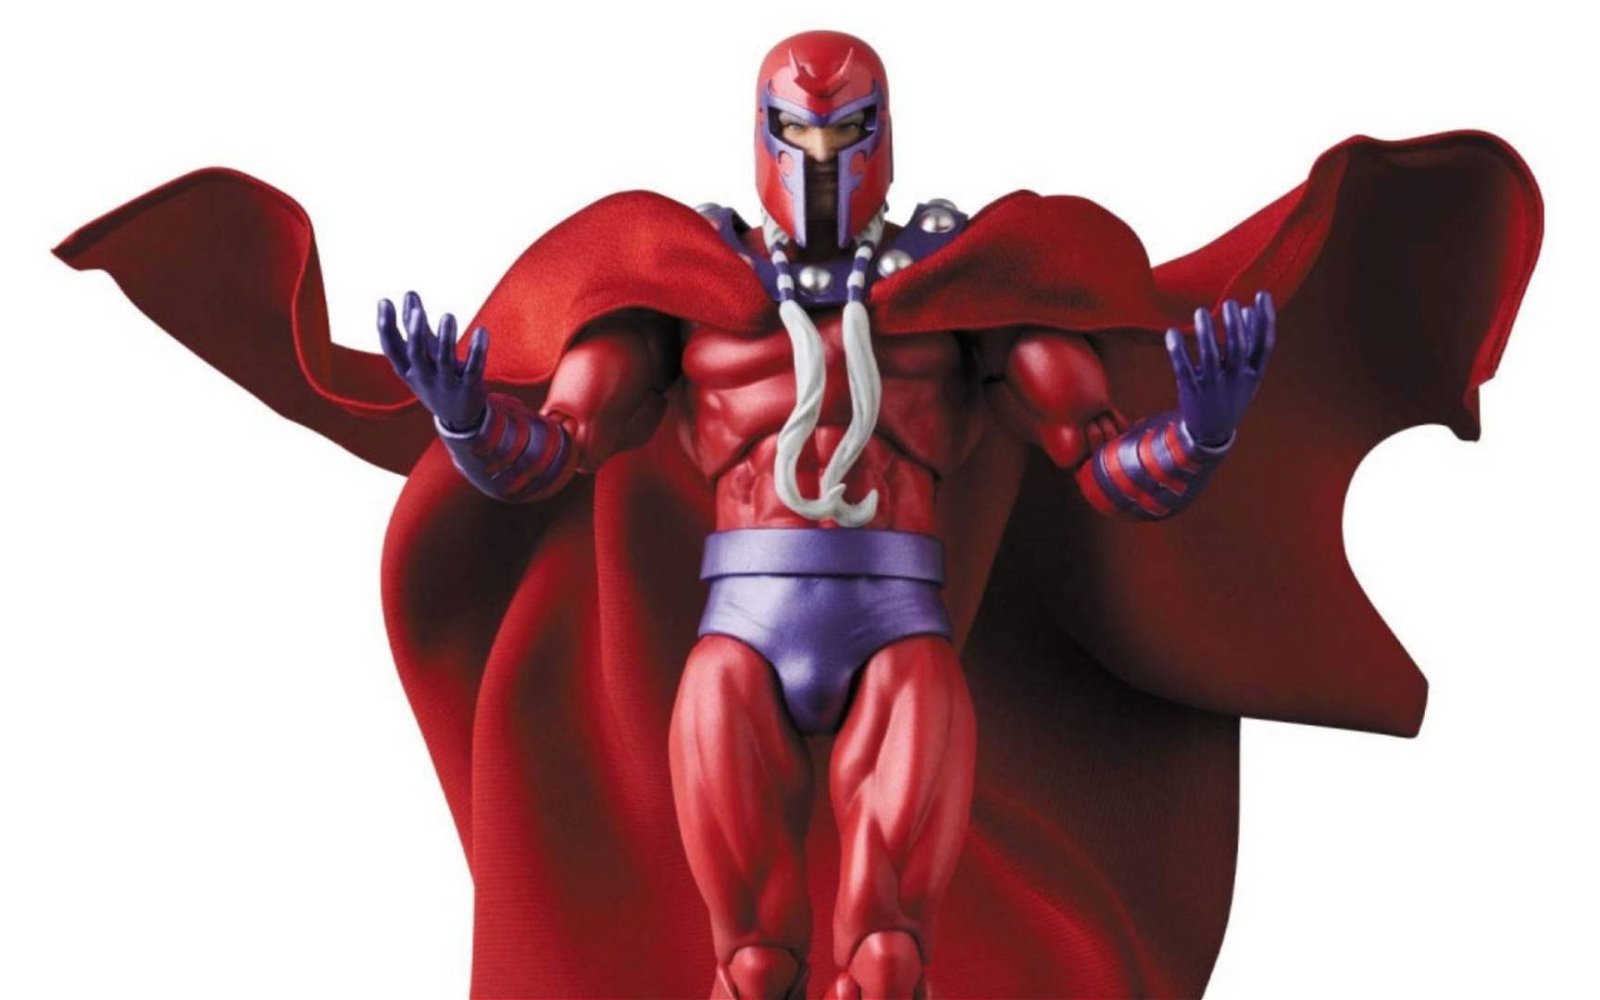 Immagine di Magneto (X-Men) per la linea MAFEX di Medicom Toy